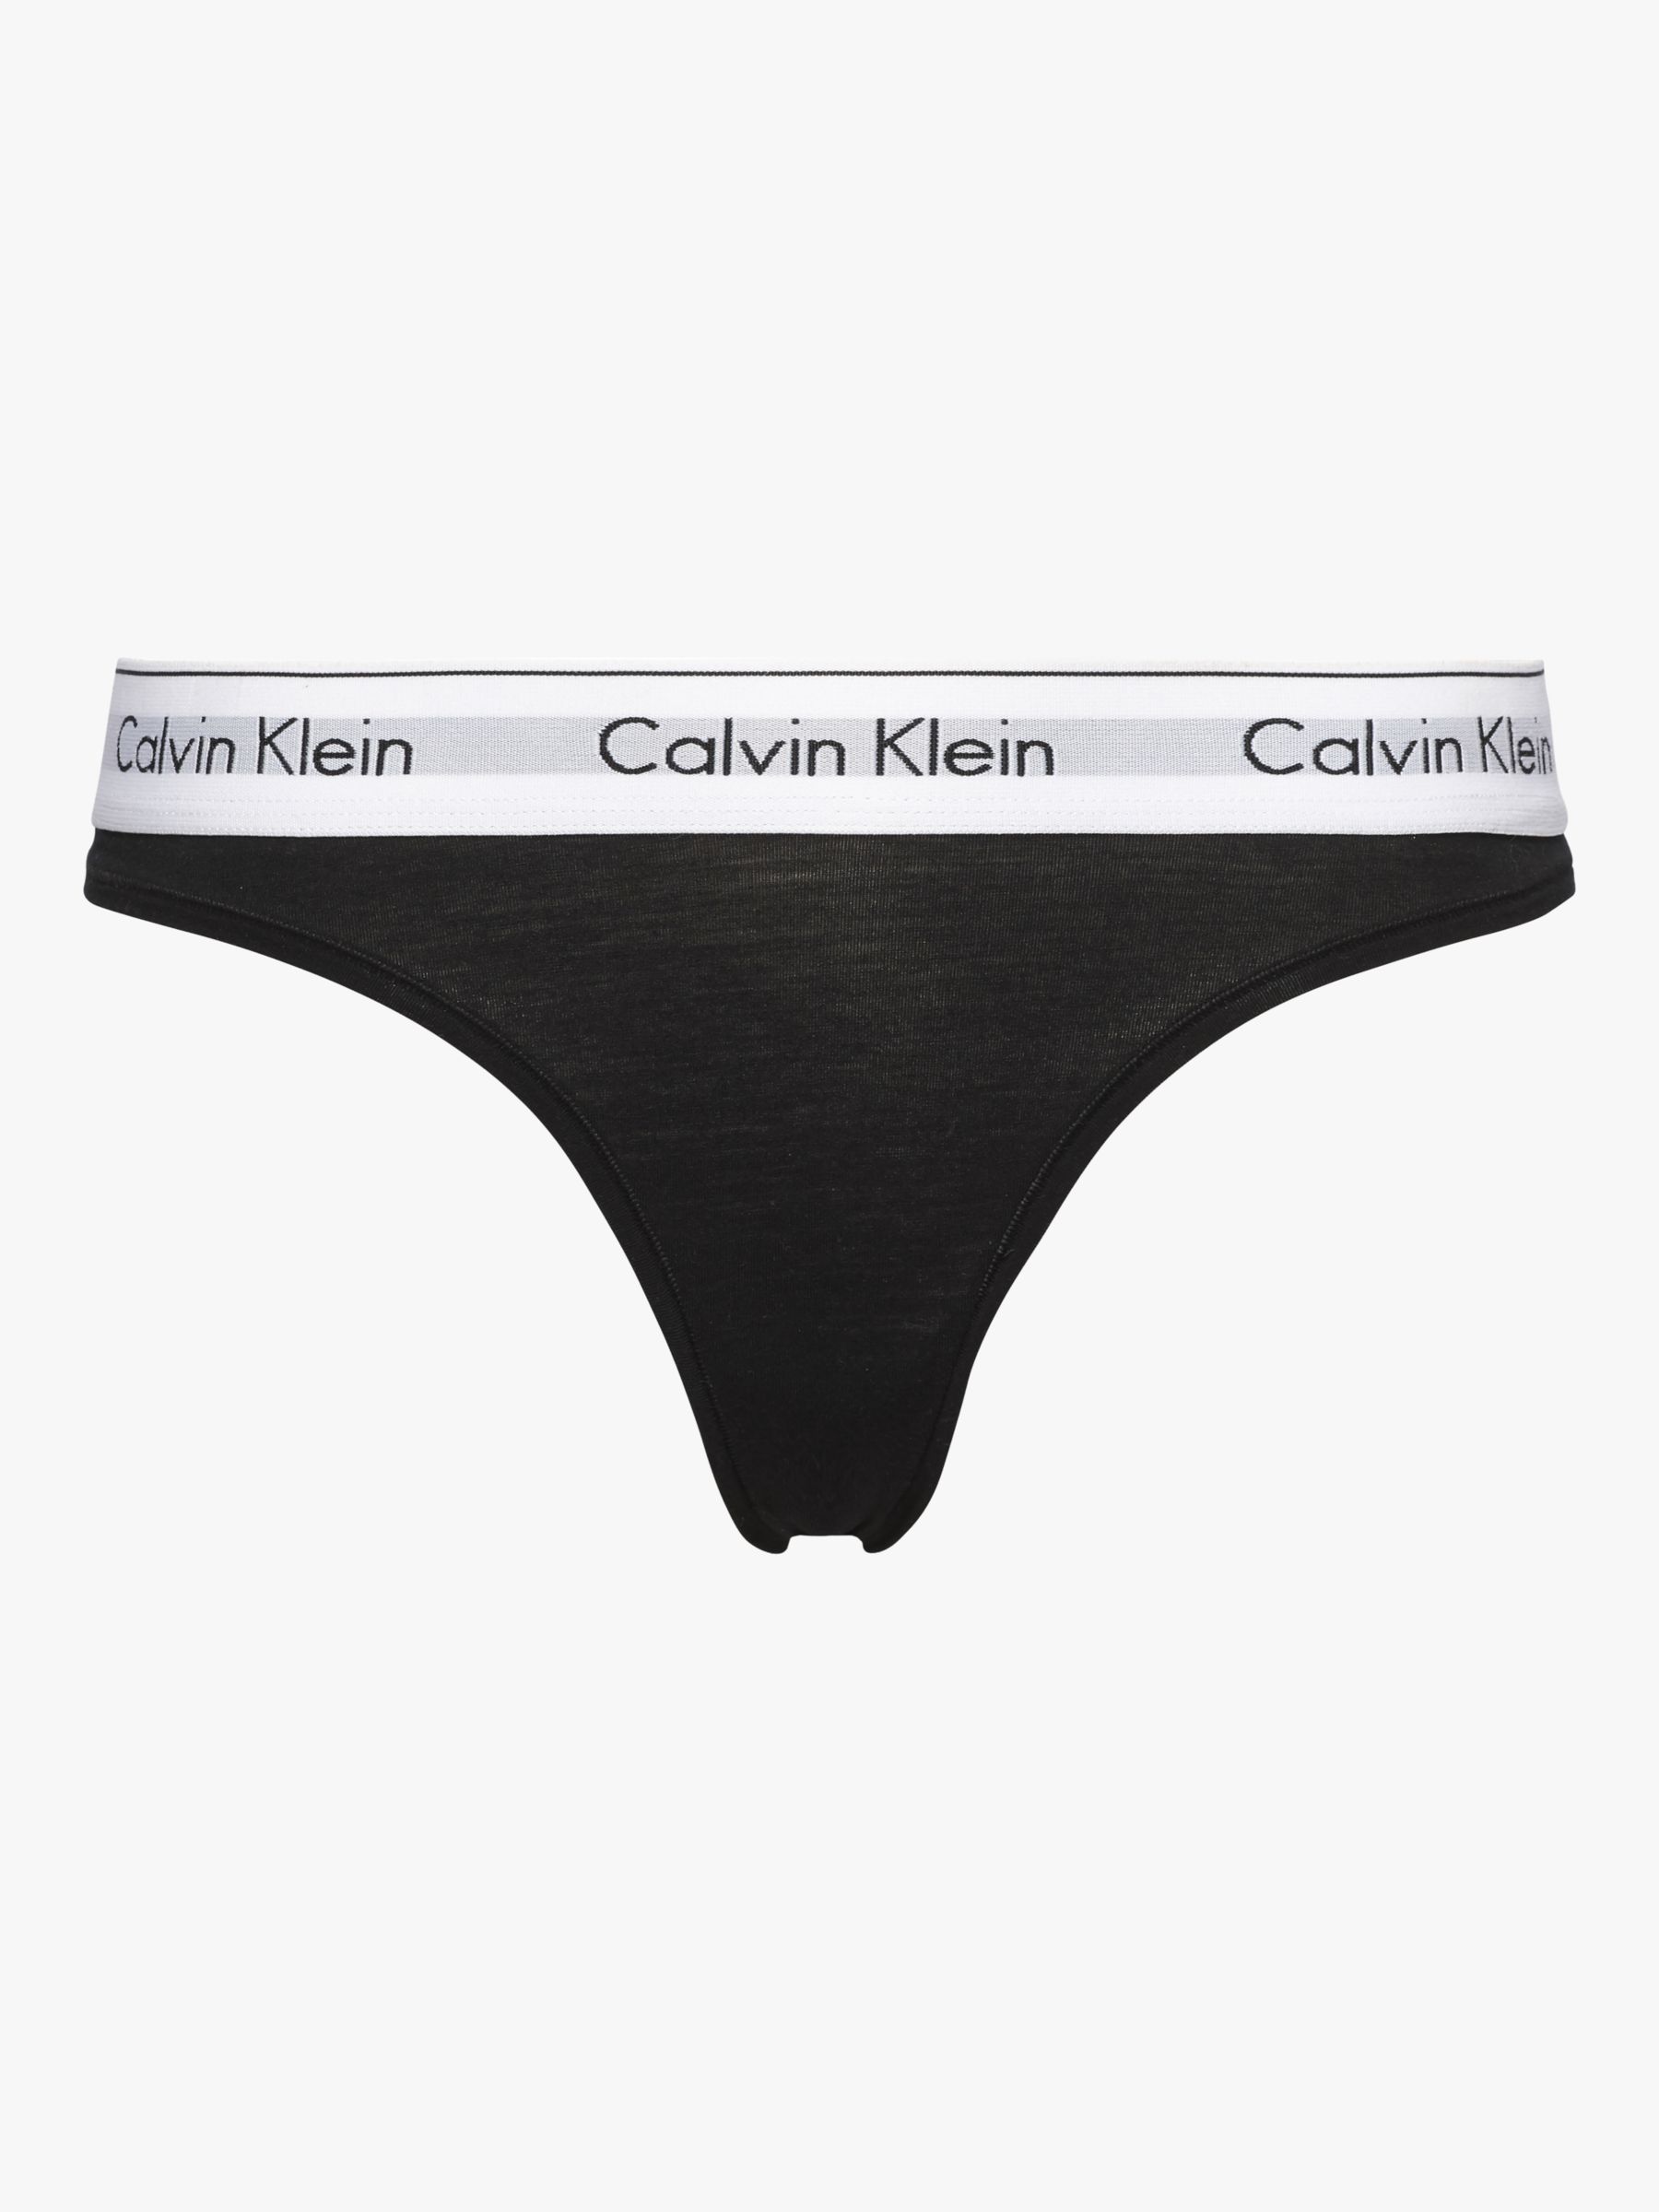 Calvin Klein Modern Cotton Thong, Black at John Lewis & Partners